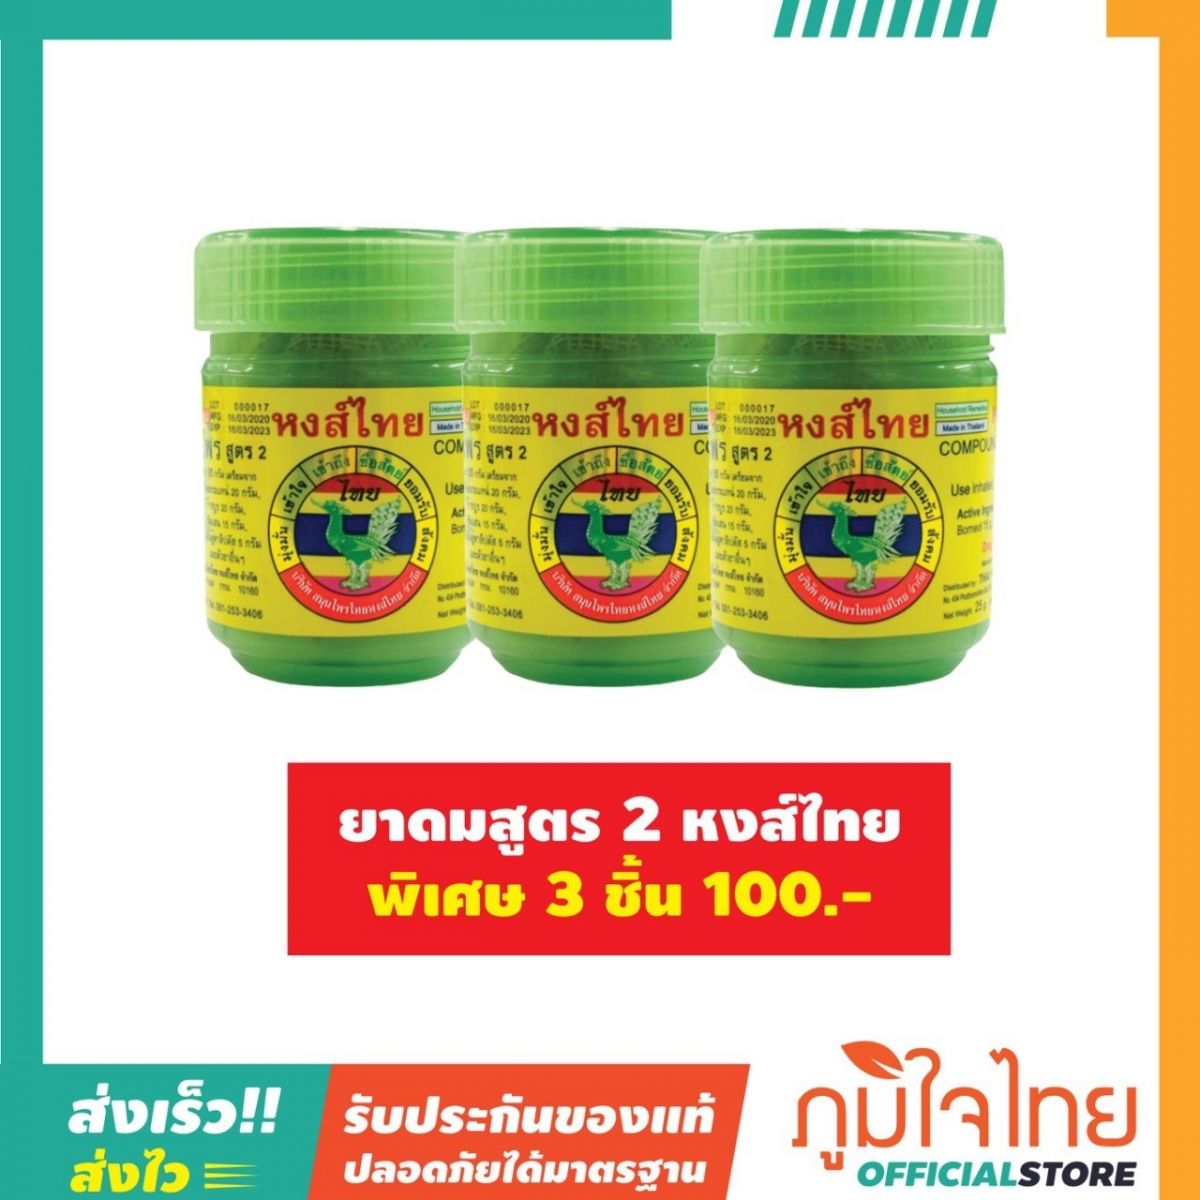 ยาดมสูตร 2 หงส์ไทย (3 ชิ้น 100.-)